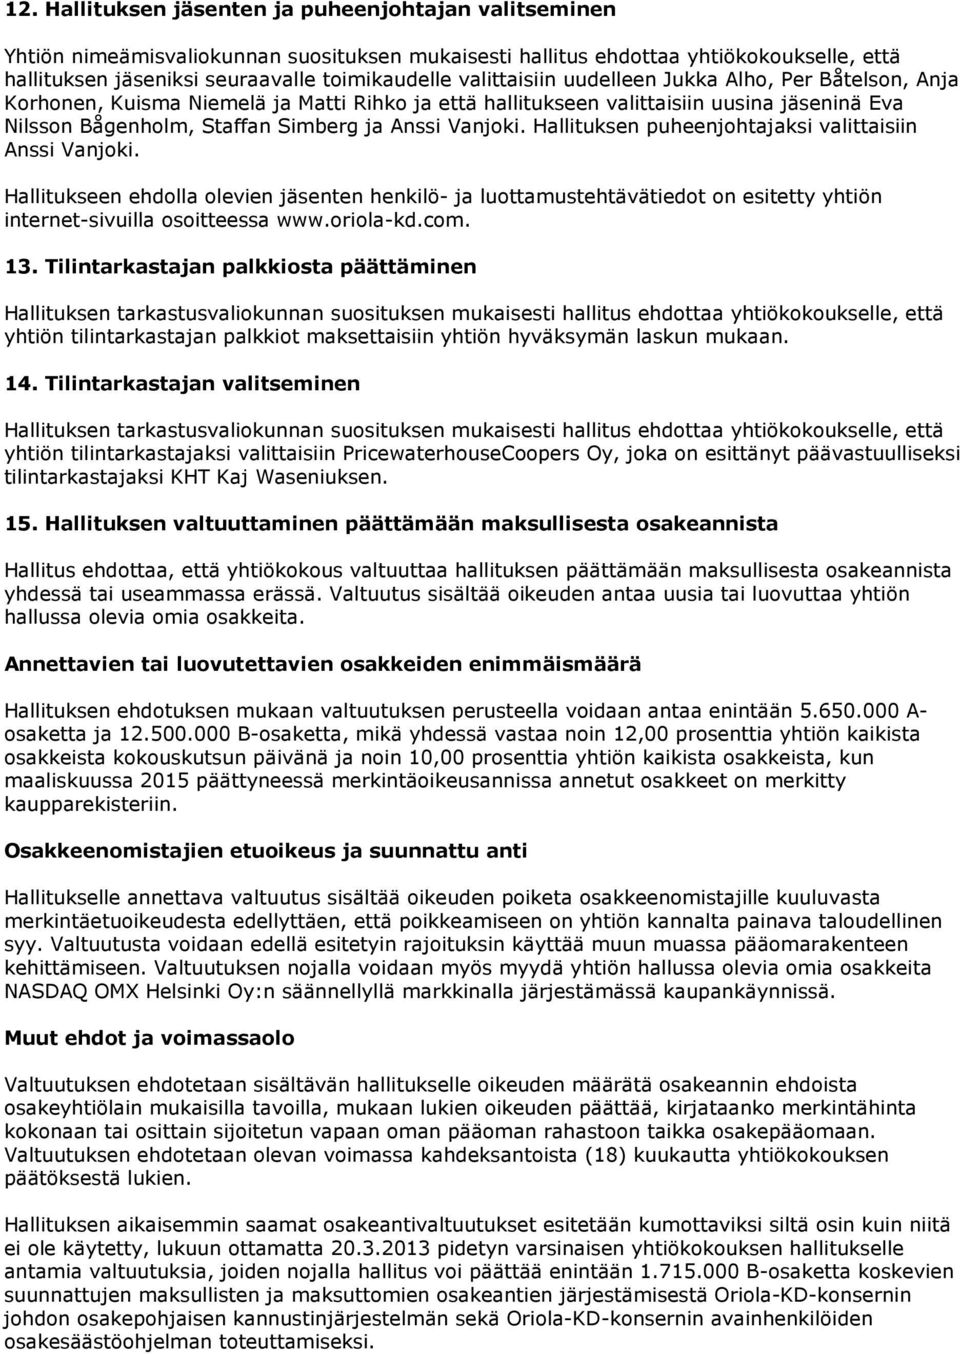 Hallituksen puheenjohtajaksi valittaisiin Anssi Vanjoki. Hallitukseen ehdolla olevien jäsenten henkilö- ja luottamustehtävätiedot on esitetty yhtiön internet-sivuilla osoitteessa www.oriola-kd.com.